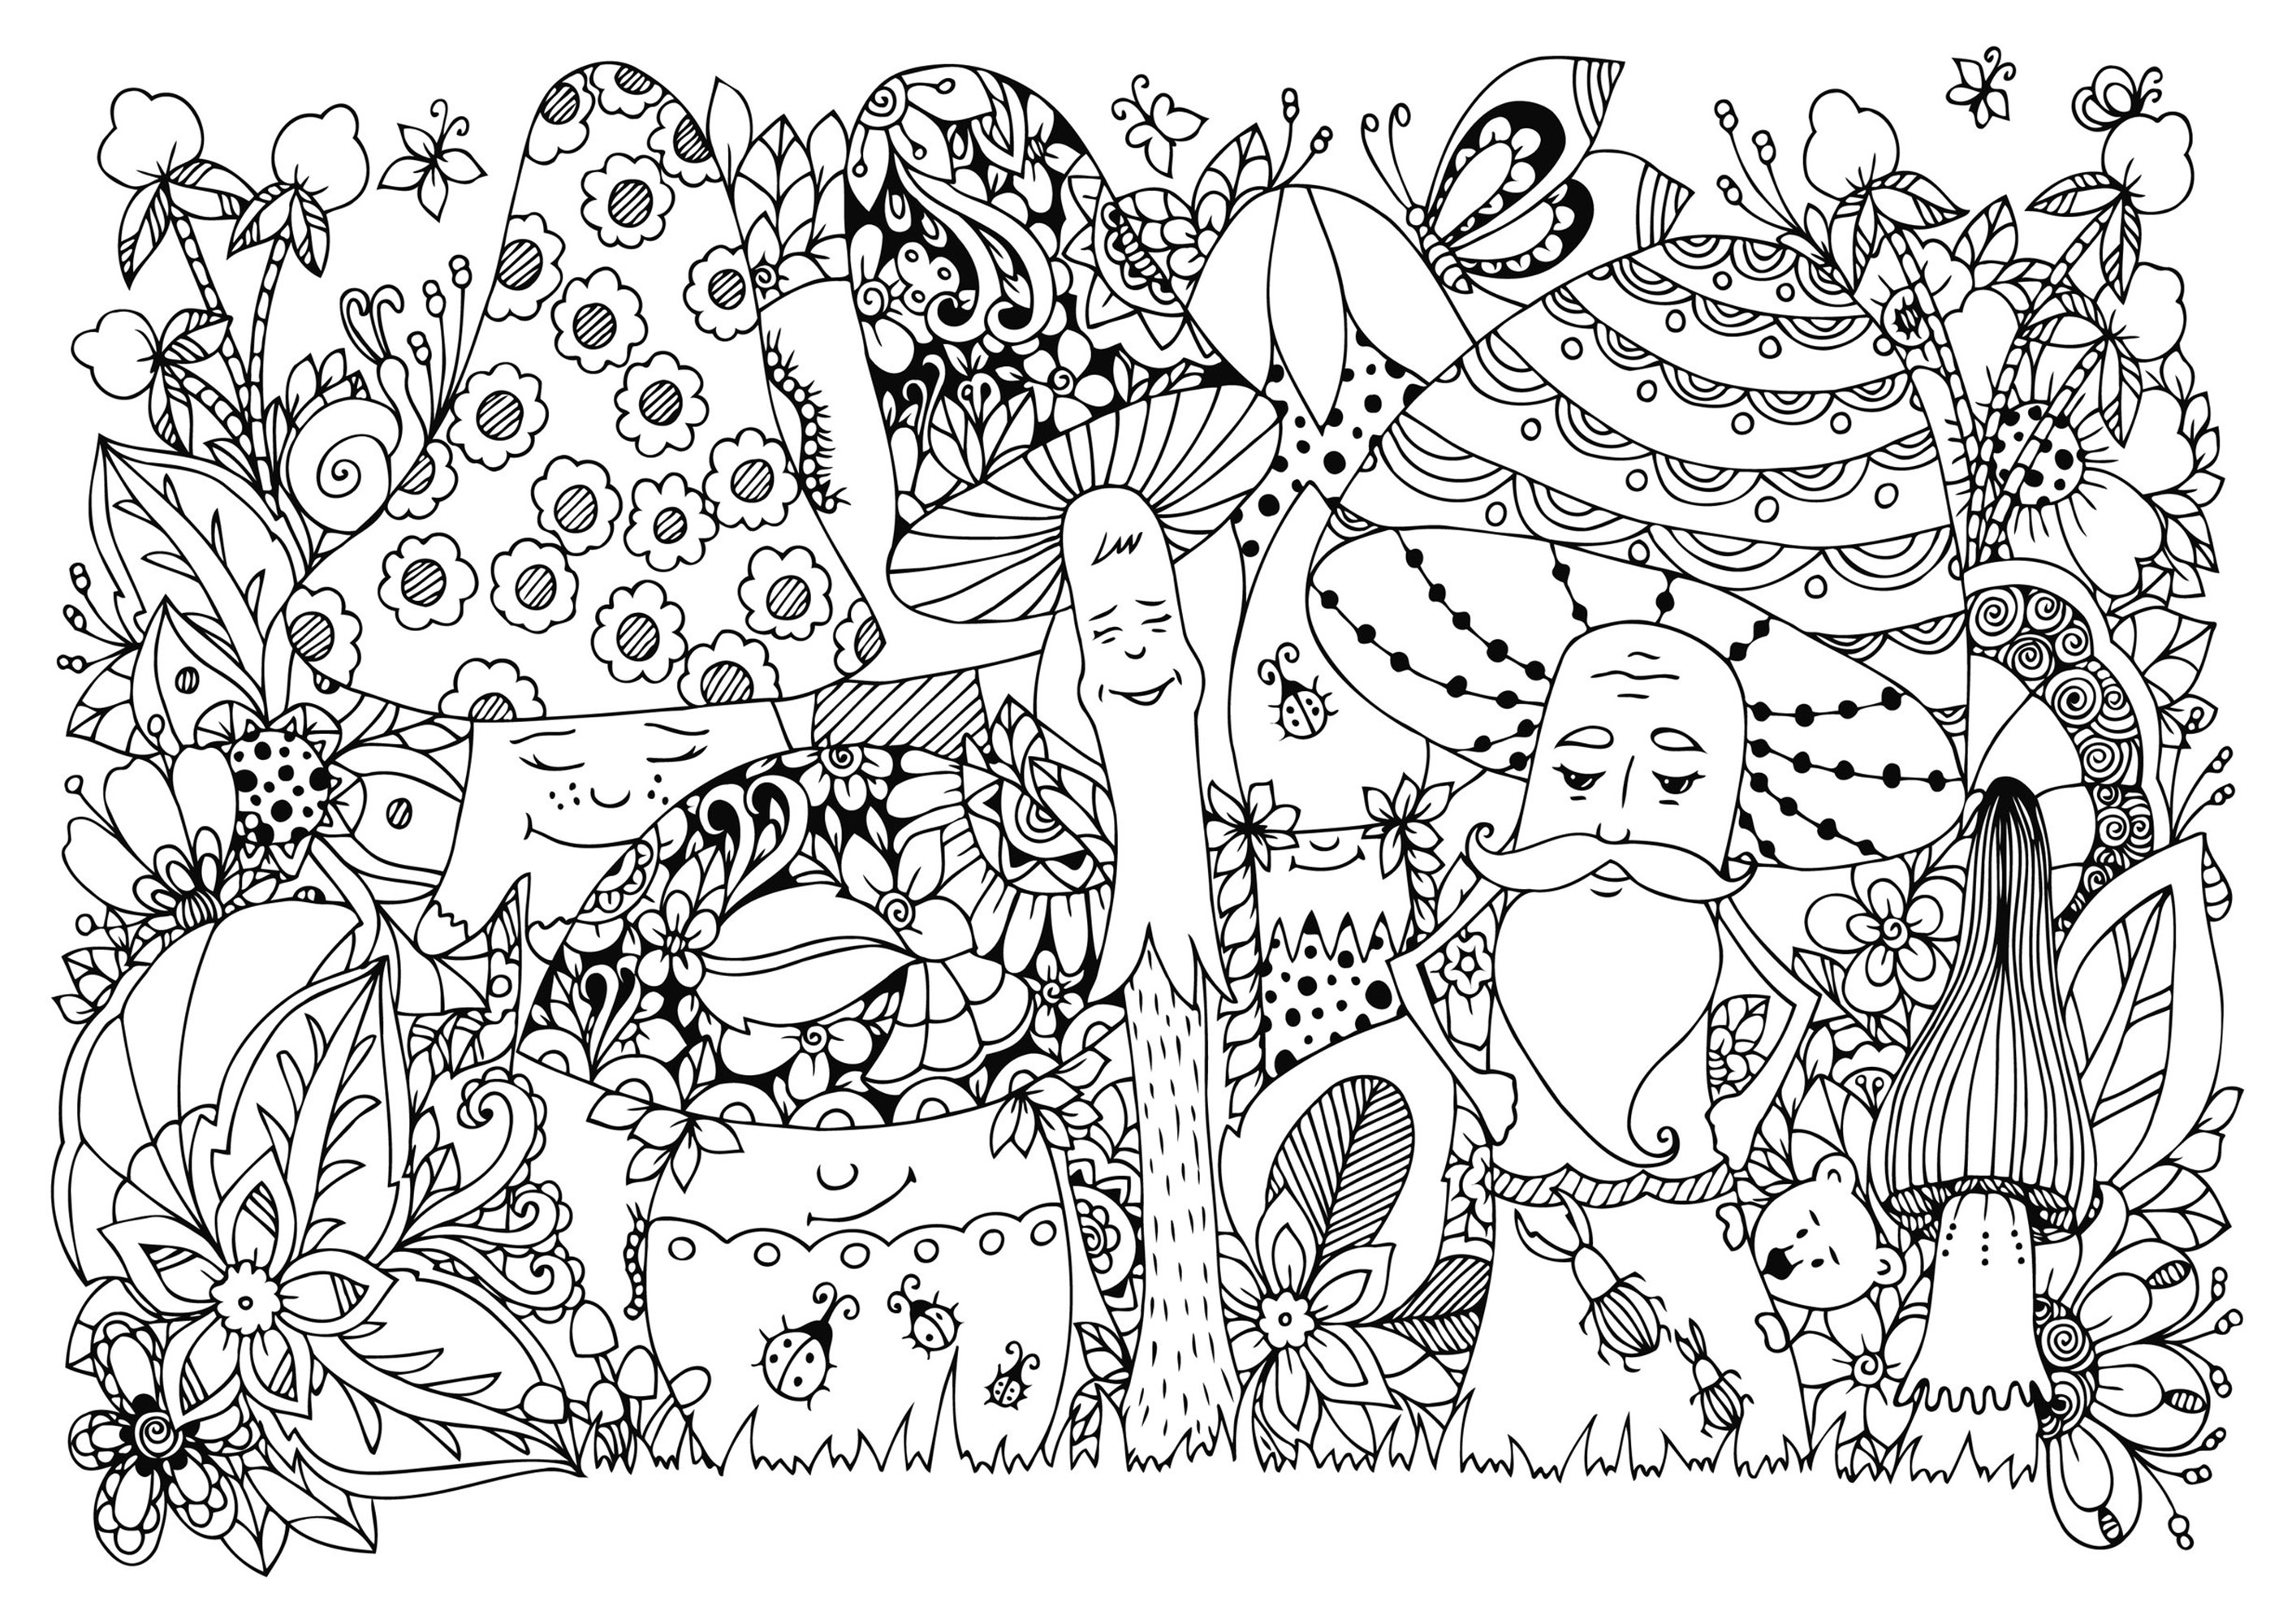 Glückliche Pilze im Wald, mit vielen Insekten und Blumen. Viele versteckte Details zum Entdecken und Ausmalen, Quelle : 123rf   Künstler : Tanvetka